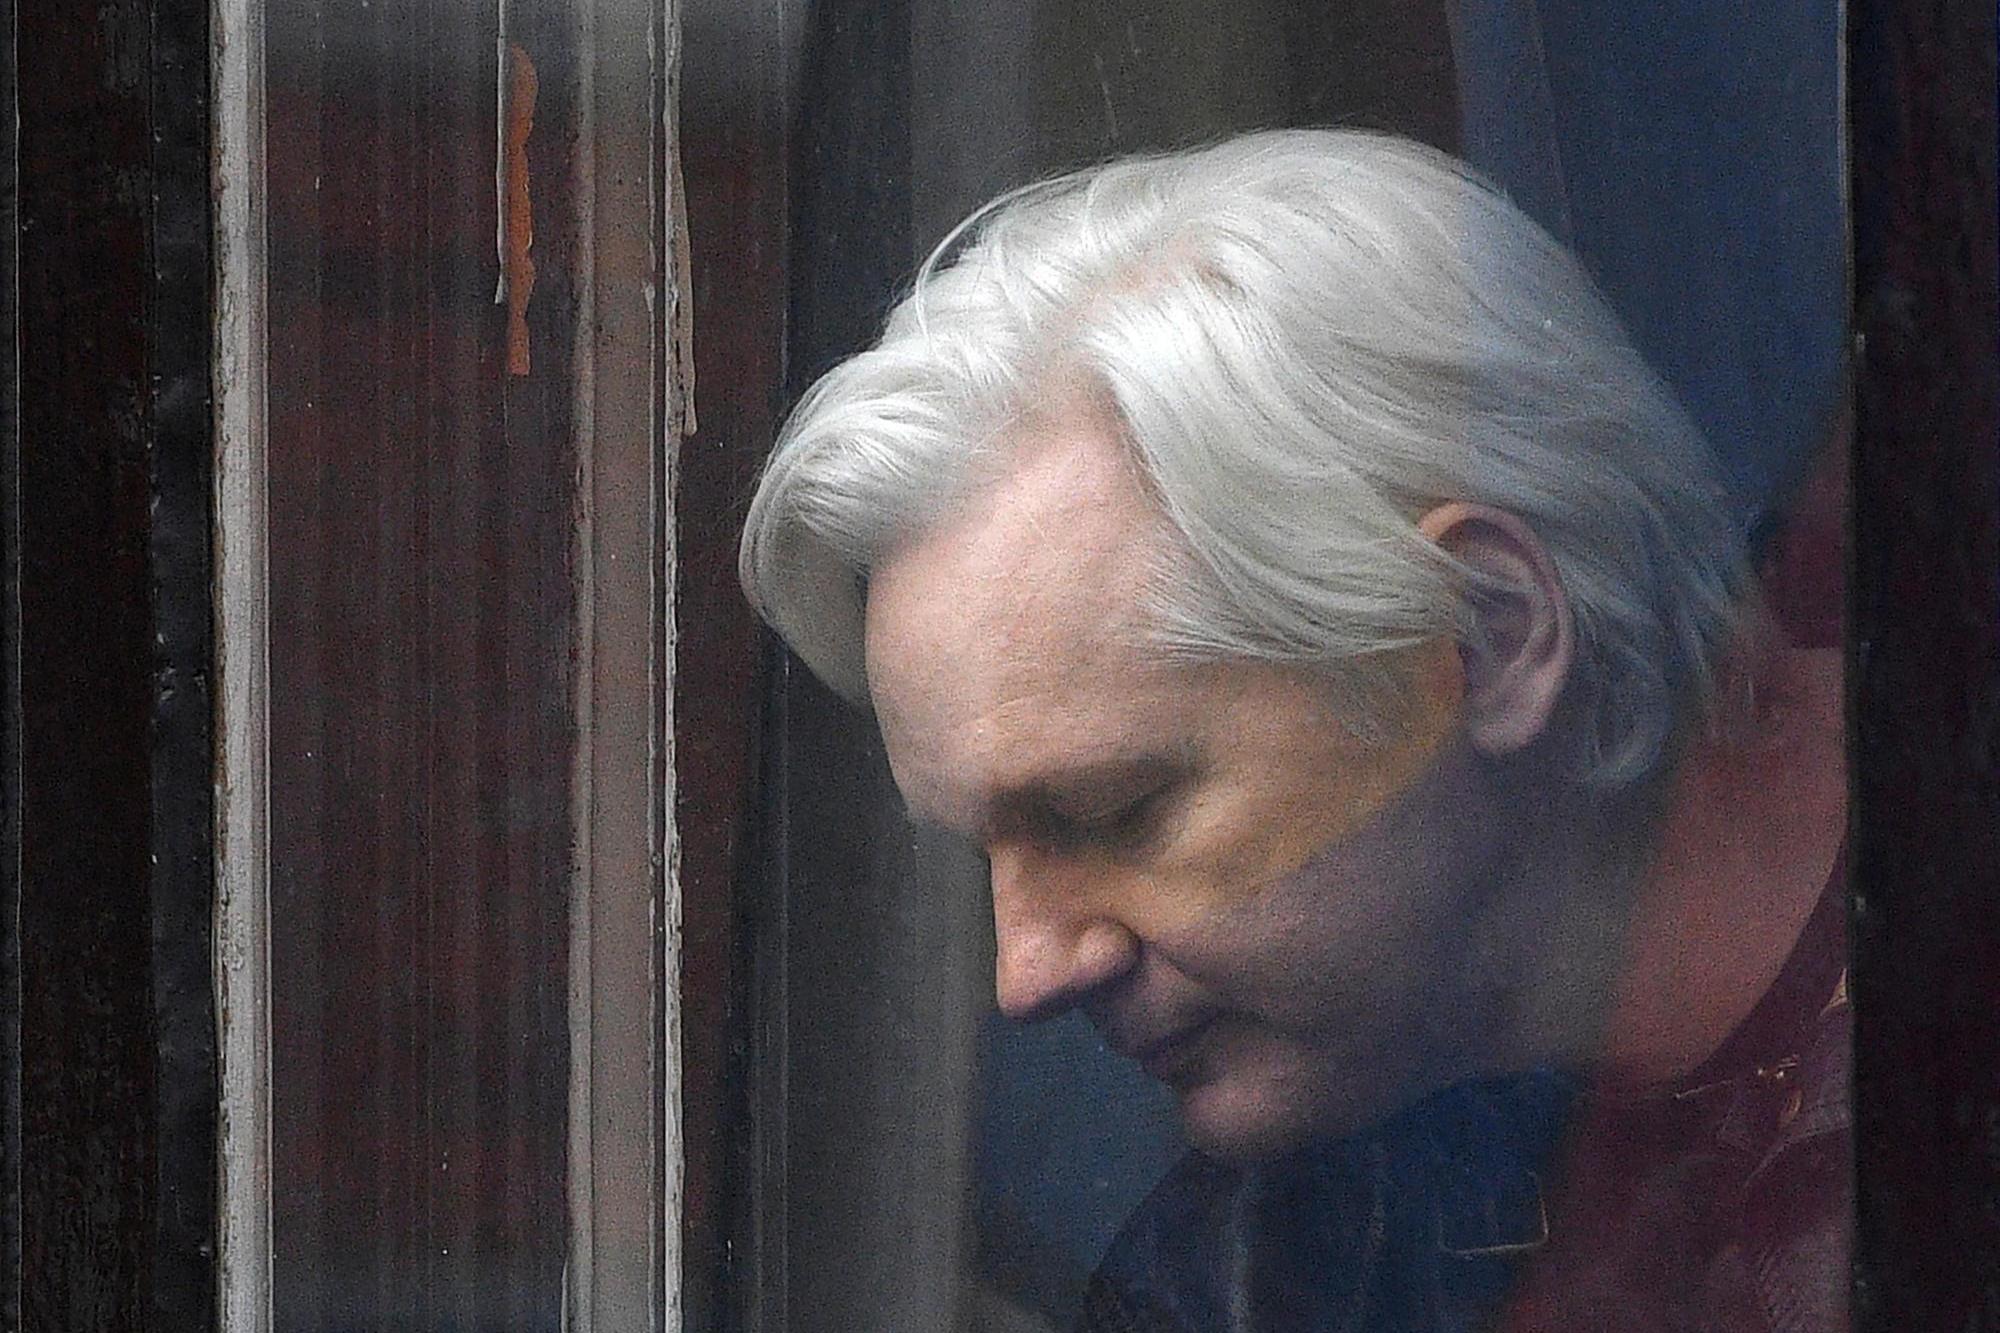 Assange, sì all’estradizione negli Usa. Wikileaks: “Giorno nero per la libertà di stampa”